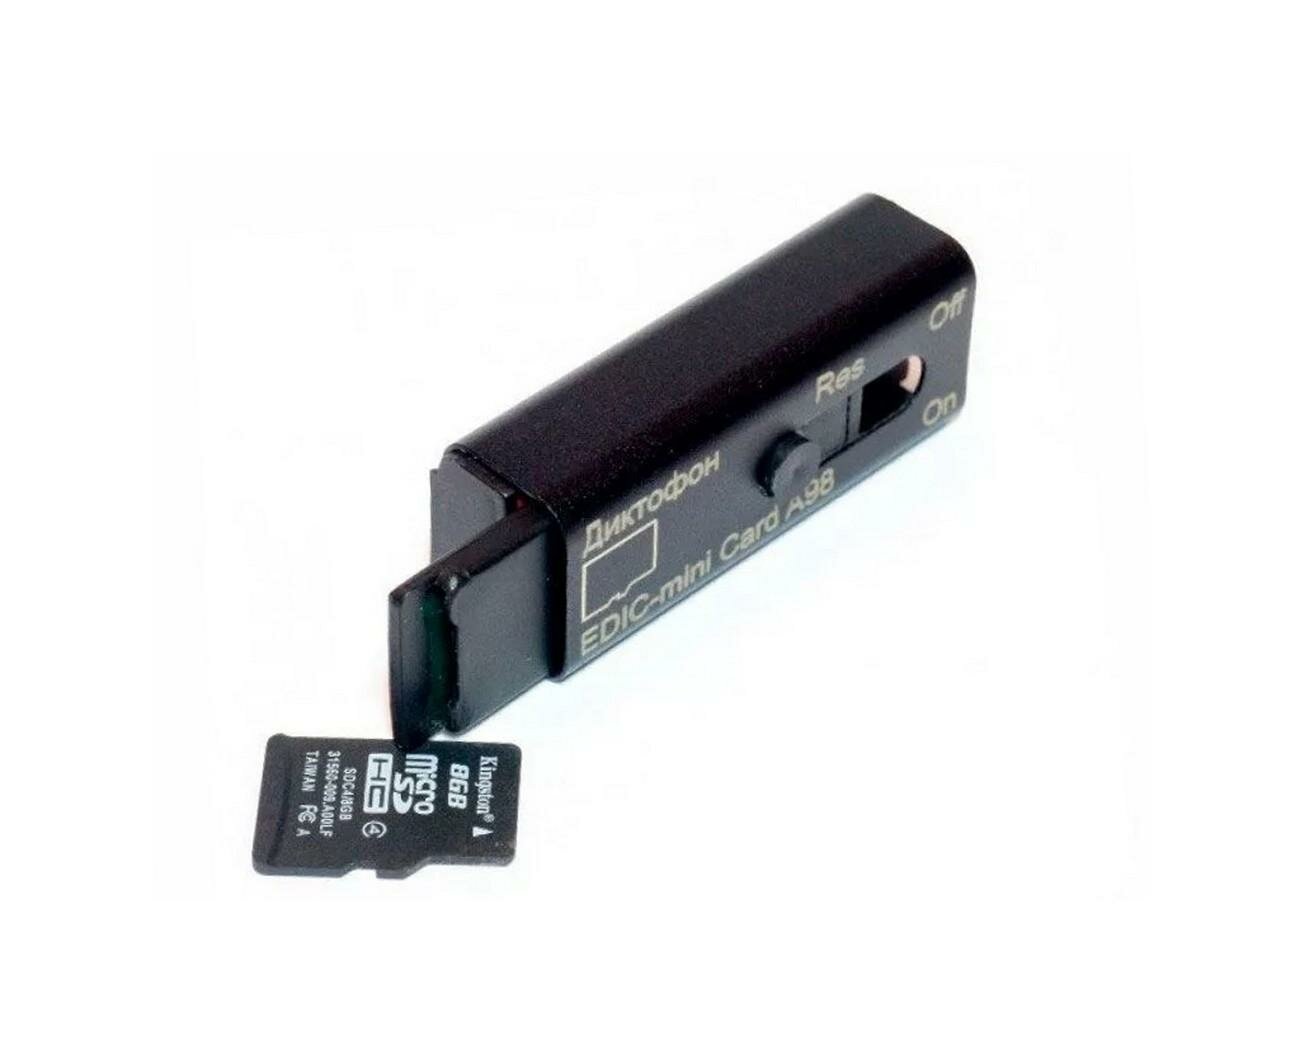 Миниатюрный диктофон для записи во время разговора Edic-mini CARD мод: A98 (W4487RU) + 2 подарка (Power-bank 10000 mAh + SD карта) - выносной микрофо